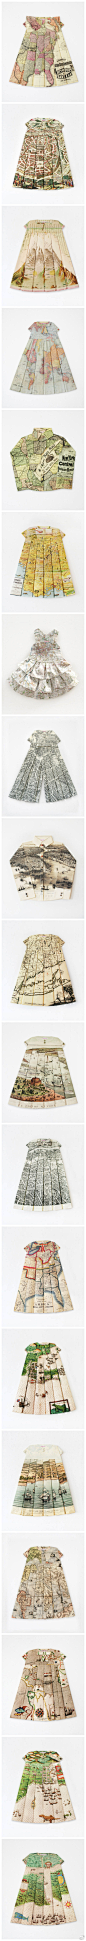 地图连衣裙是法国艺术家 Elisabeth Lecourt （伊丽莎白）的一系列有趣的创意设计作品，把丰富、壮美的河山印在服饰上别致而又独特，这其中也许还蕴藏着主动去探索世界和让世界了解你的深厚内涵因为总觉得它不是看上去那么简单，就连裙摆上的地图构图也是经过艺术家精心布置的。